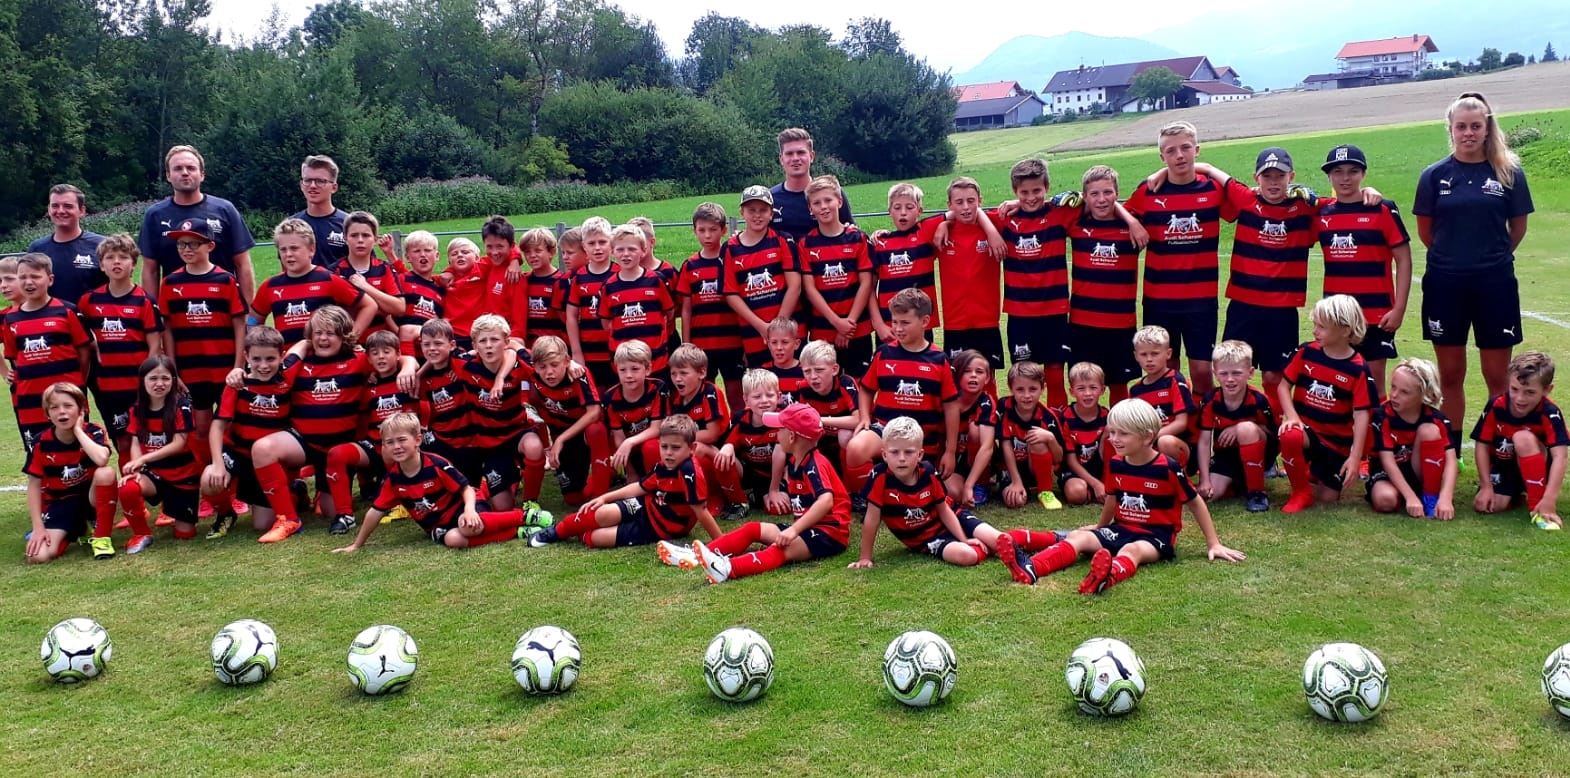 Erstes Fußballcamp der Audi Schanzer Fußballschule beim SVS: Ein voller Erfolg!